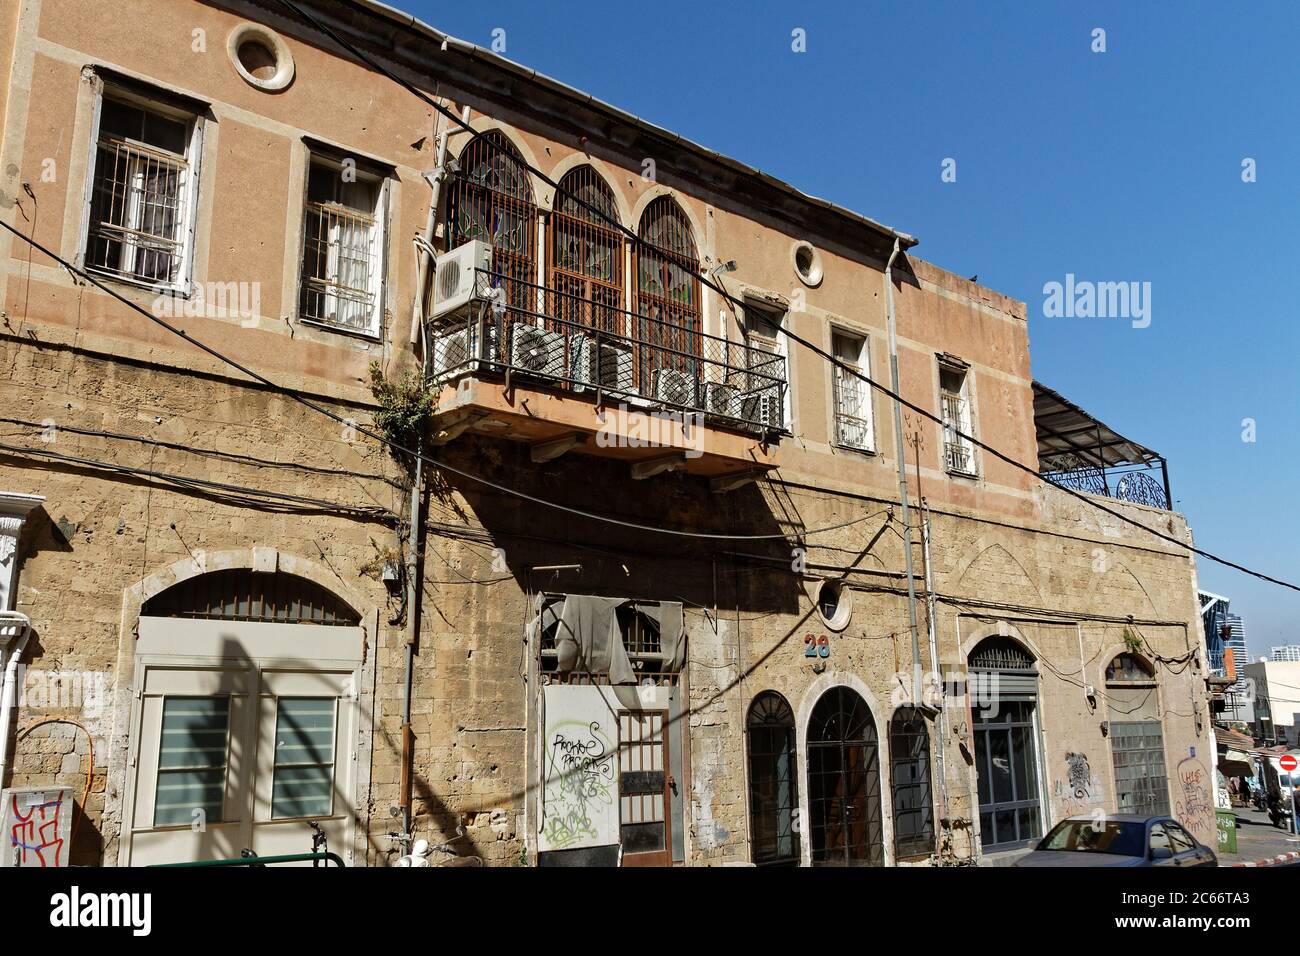 Old Jaffa, Tel Aviv, Israele, Okt5,2016: Vecchia casa con balcone pieno di aria condizionata.Aircos per il raffreddamento in una calda giornata della città a causa del riscaldamento globale Foto Stock